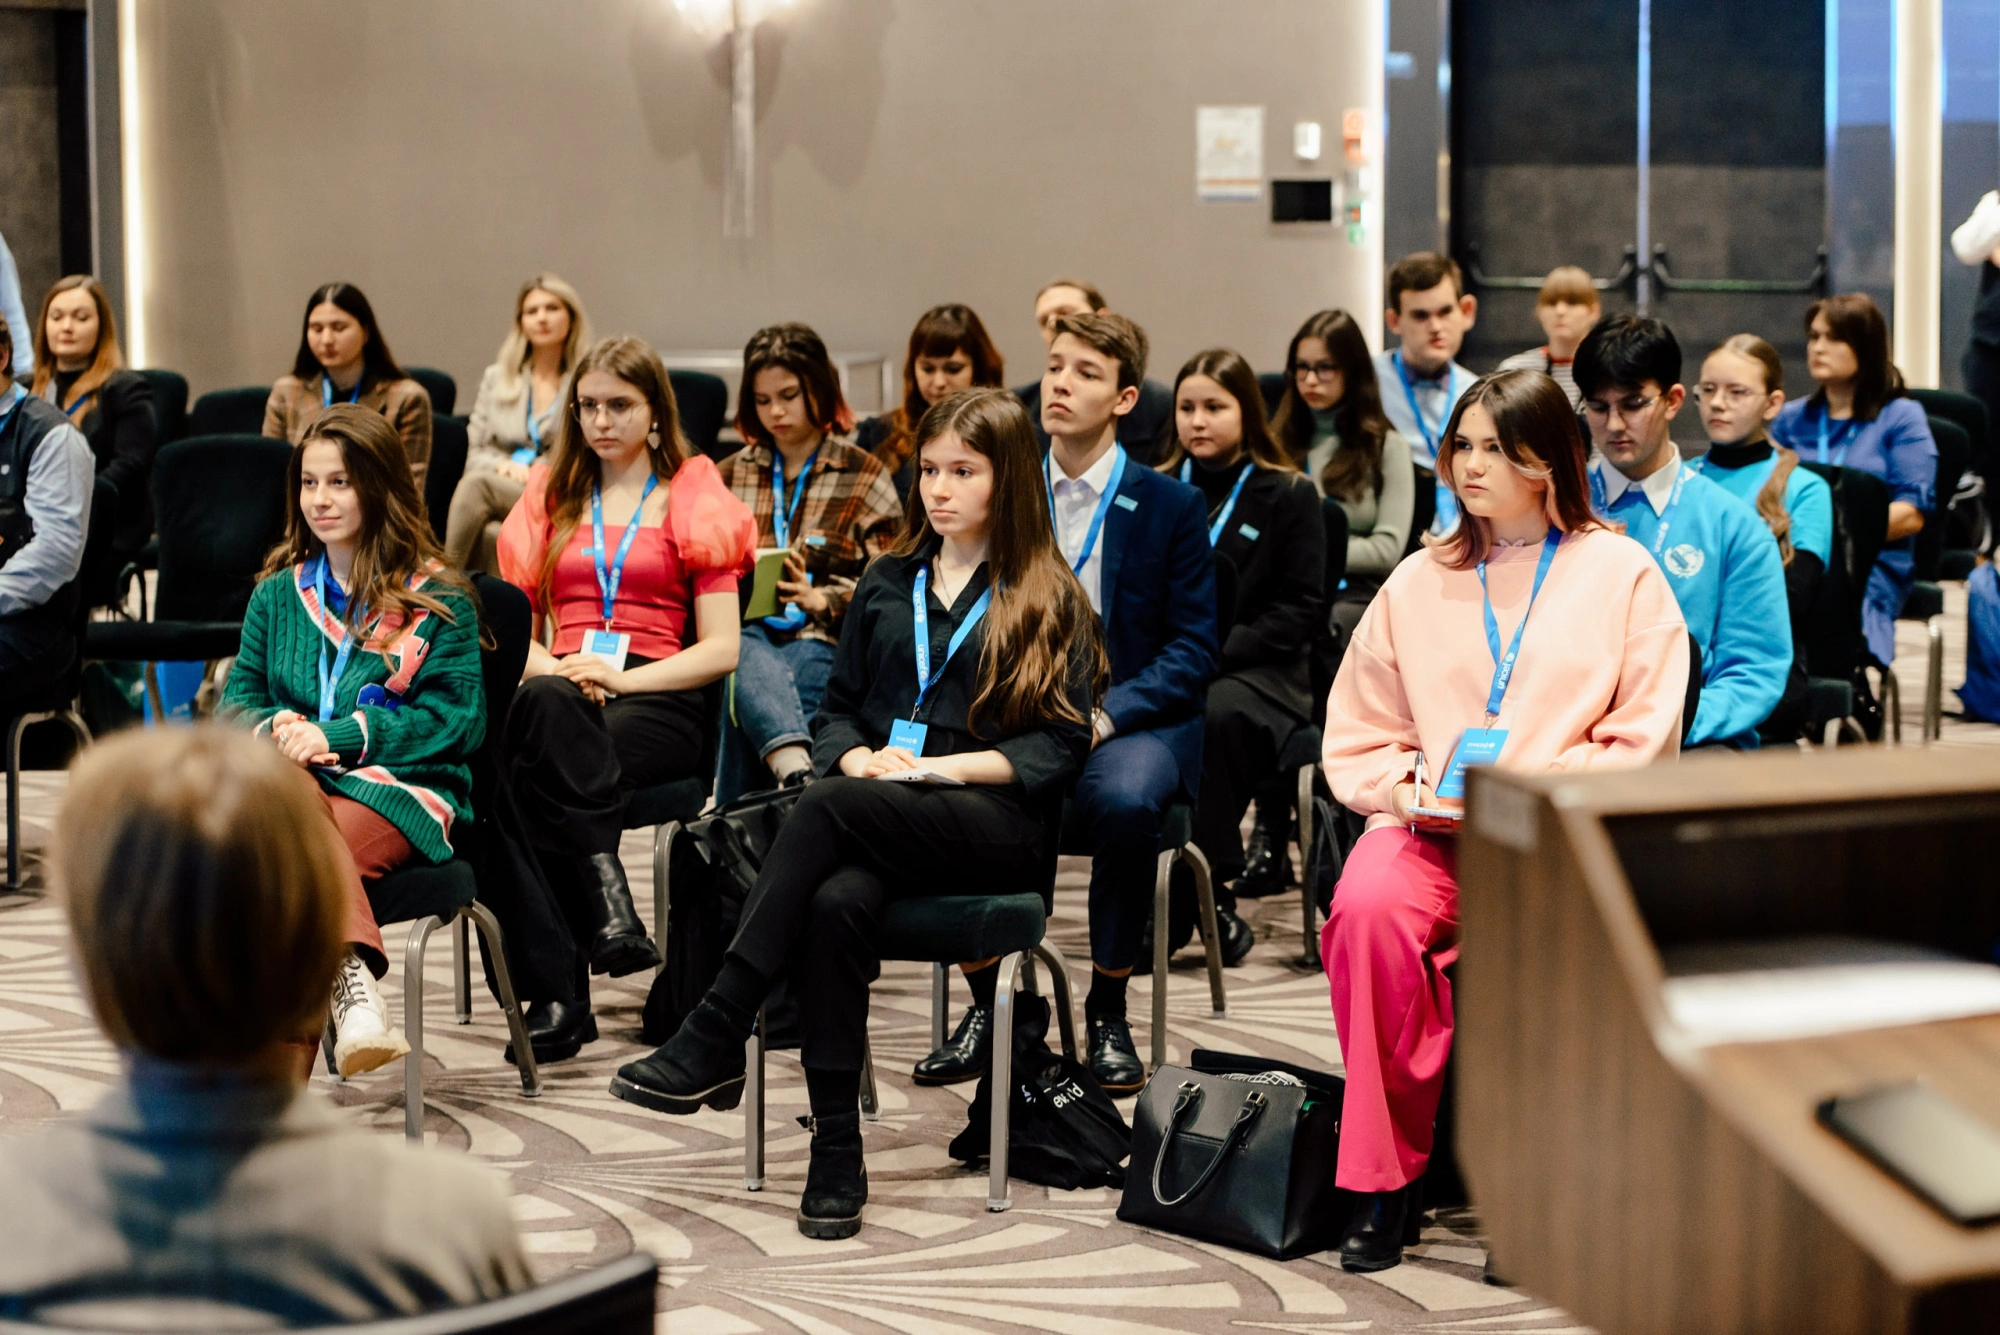 МТС принял участие в открытой дискуссии подростков и представителей бизнеса Беларуси